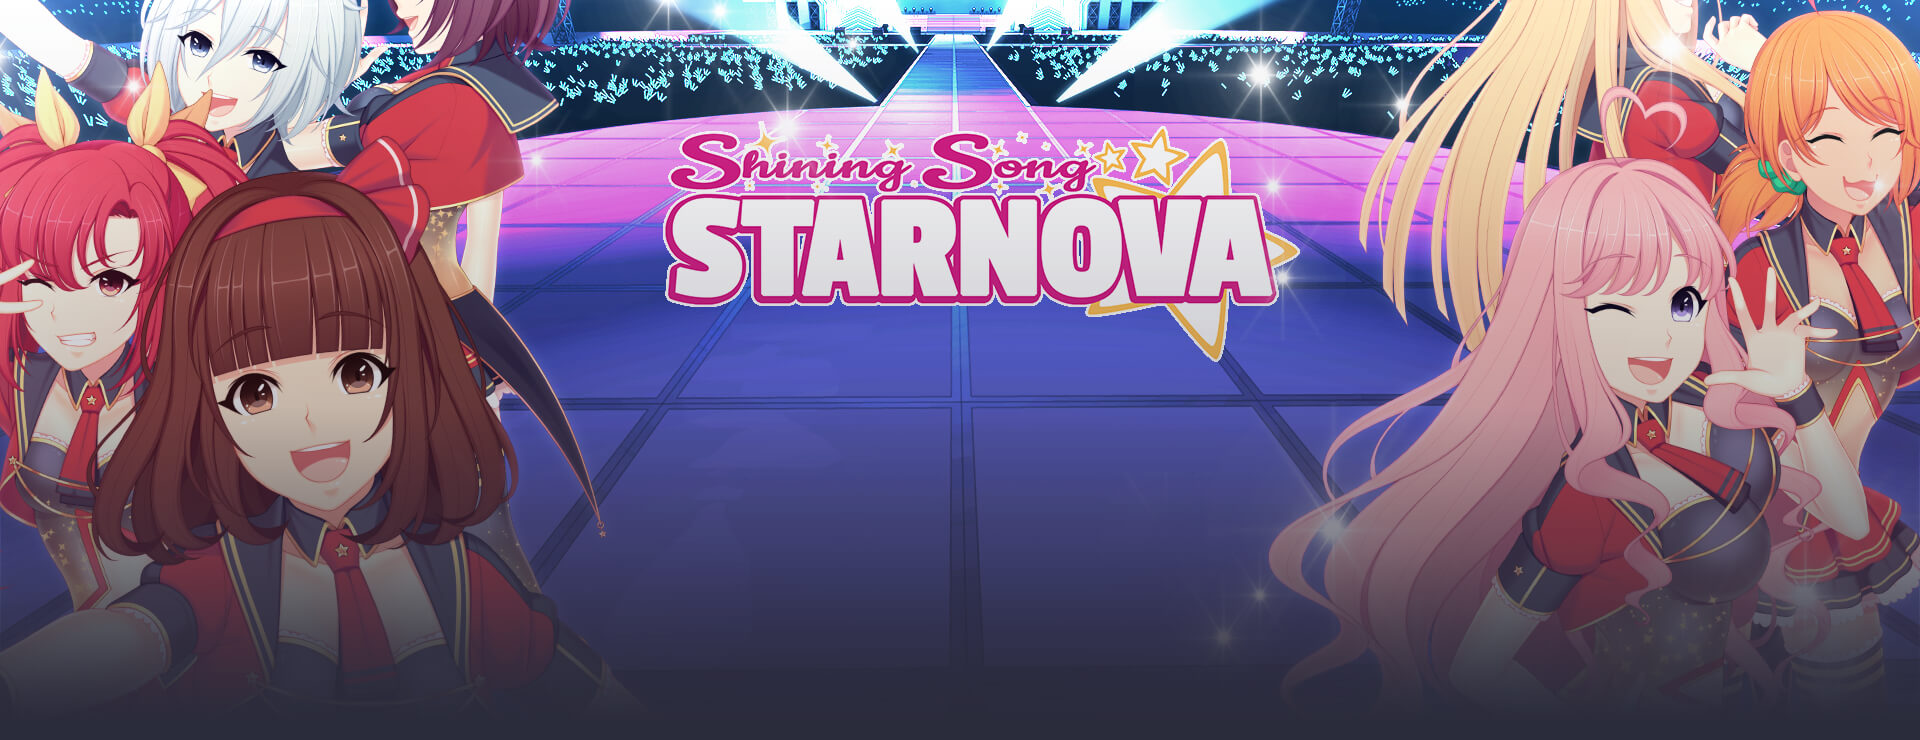 Shining Song Starnova - Powieść wizualna Gra